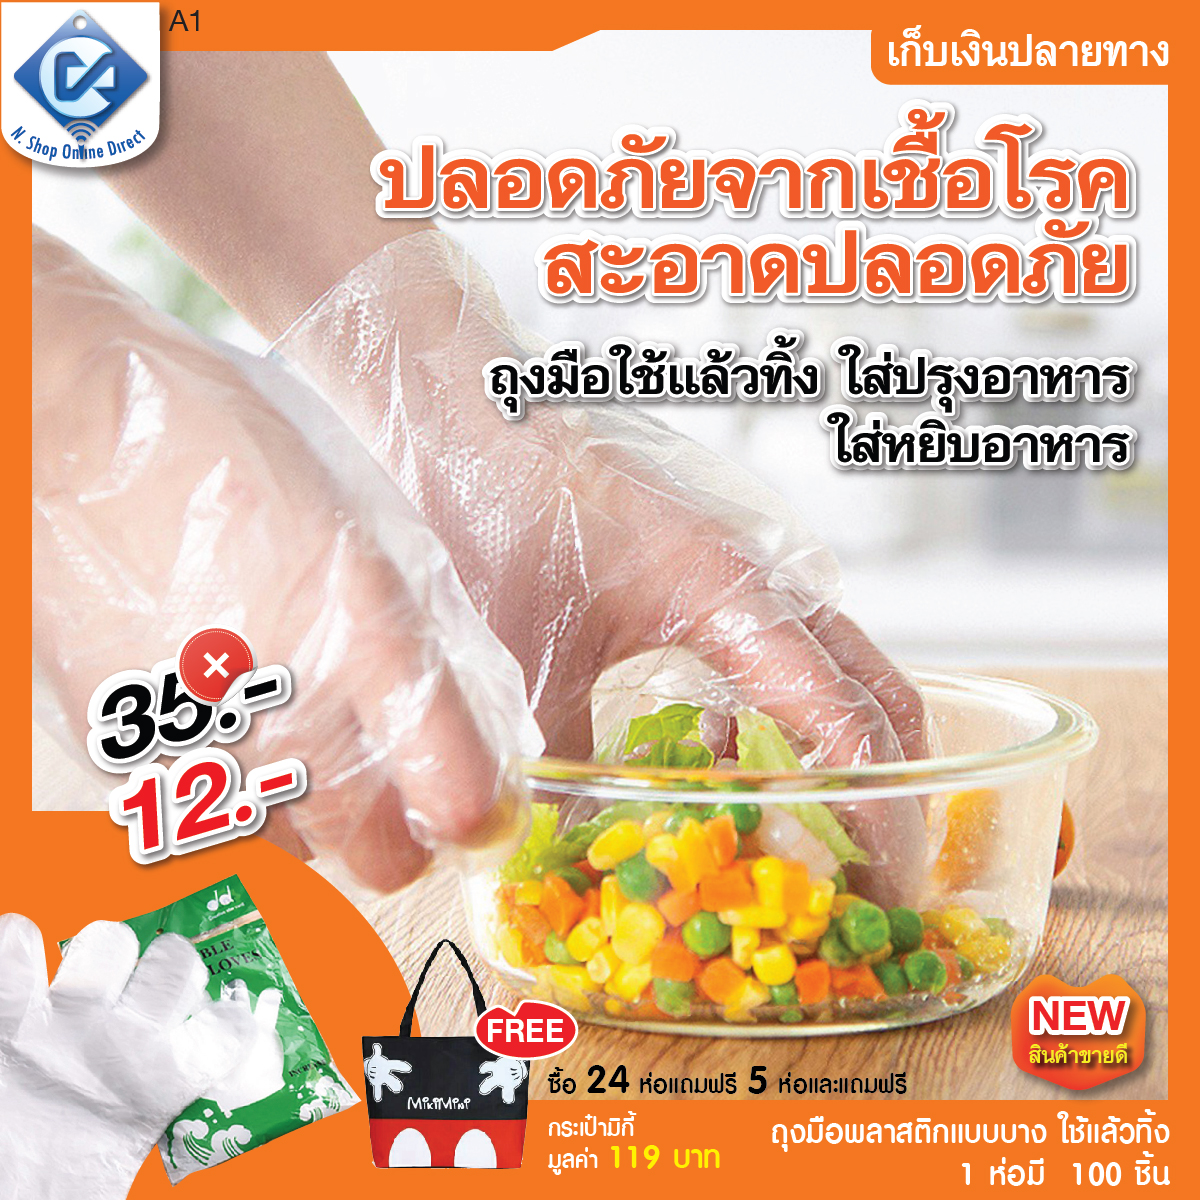 ถุงมือพลาสติกแบบบาง ถุงมือใช้แล้วทิ้ง ถุงมือใส่ทำอาหาร ถุงมือใส่หยิบอาหาร